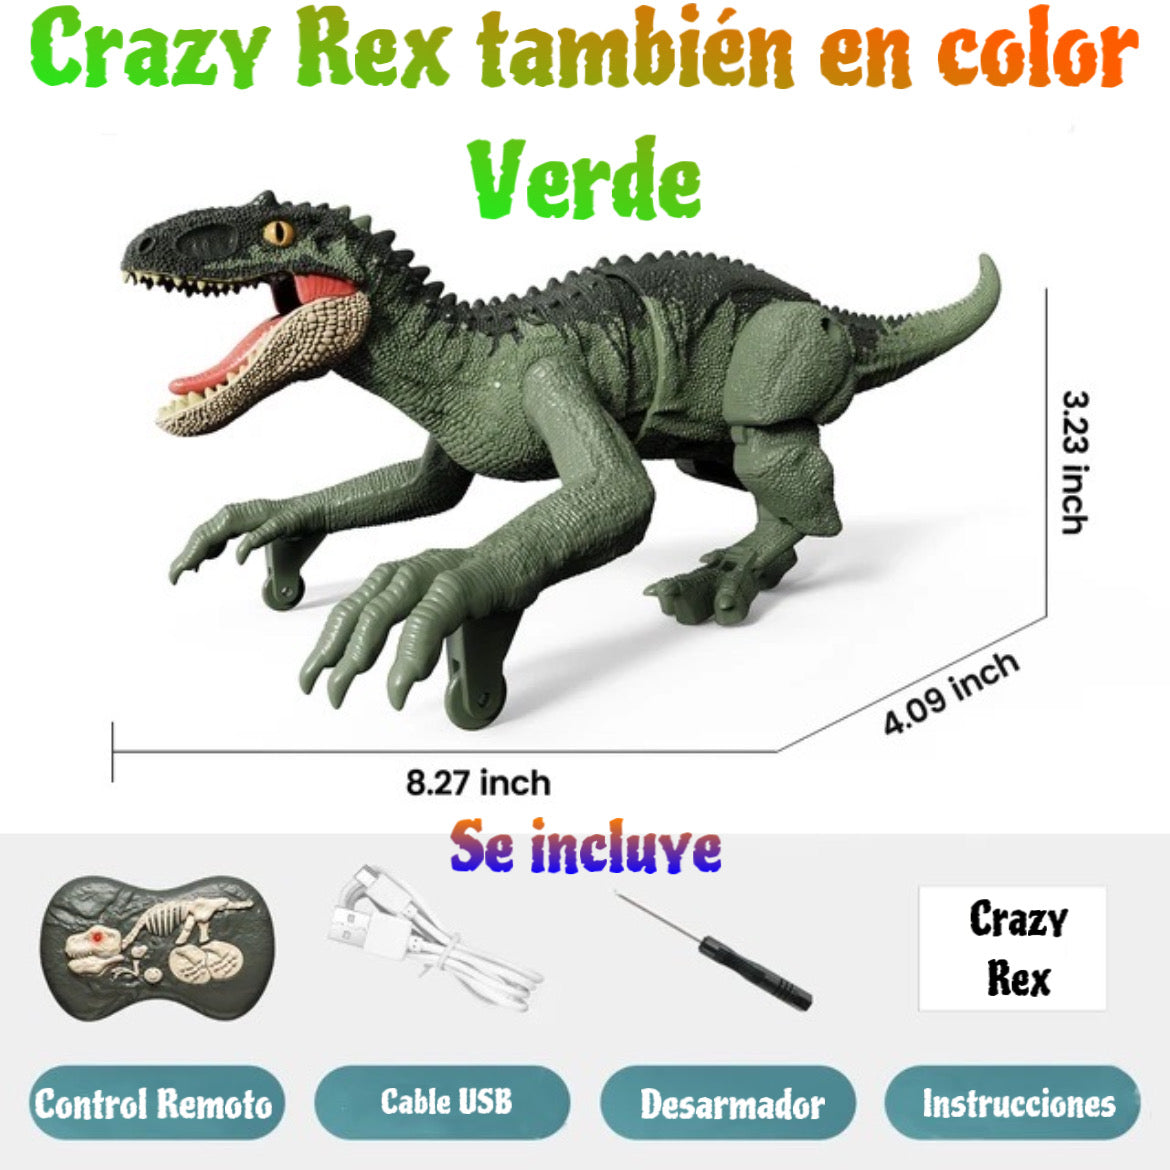 Crazy Rex